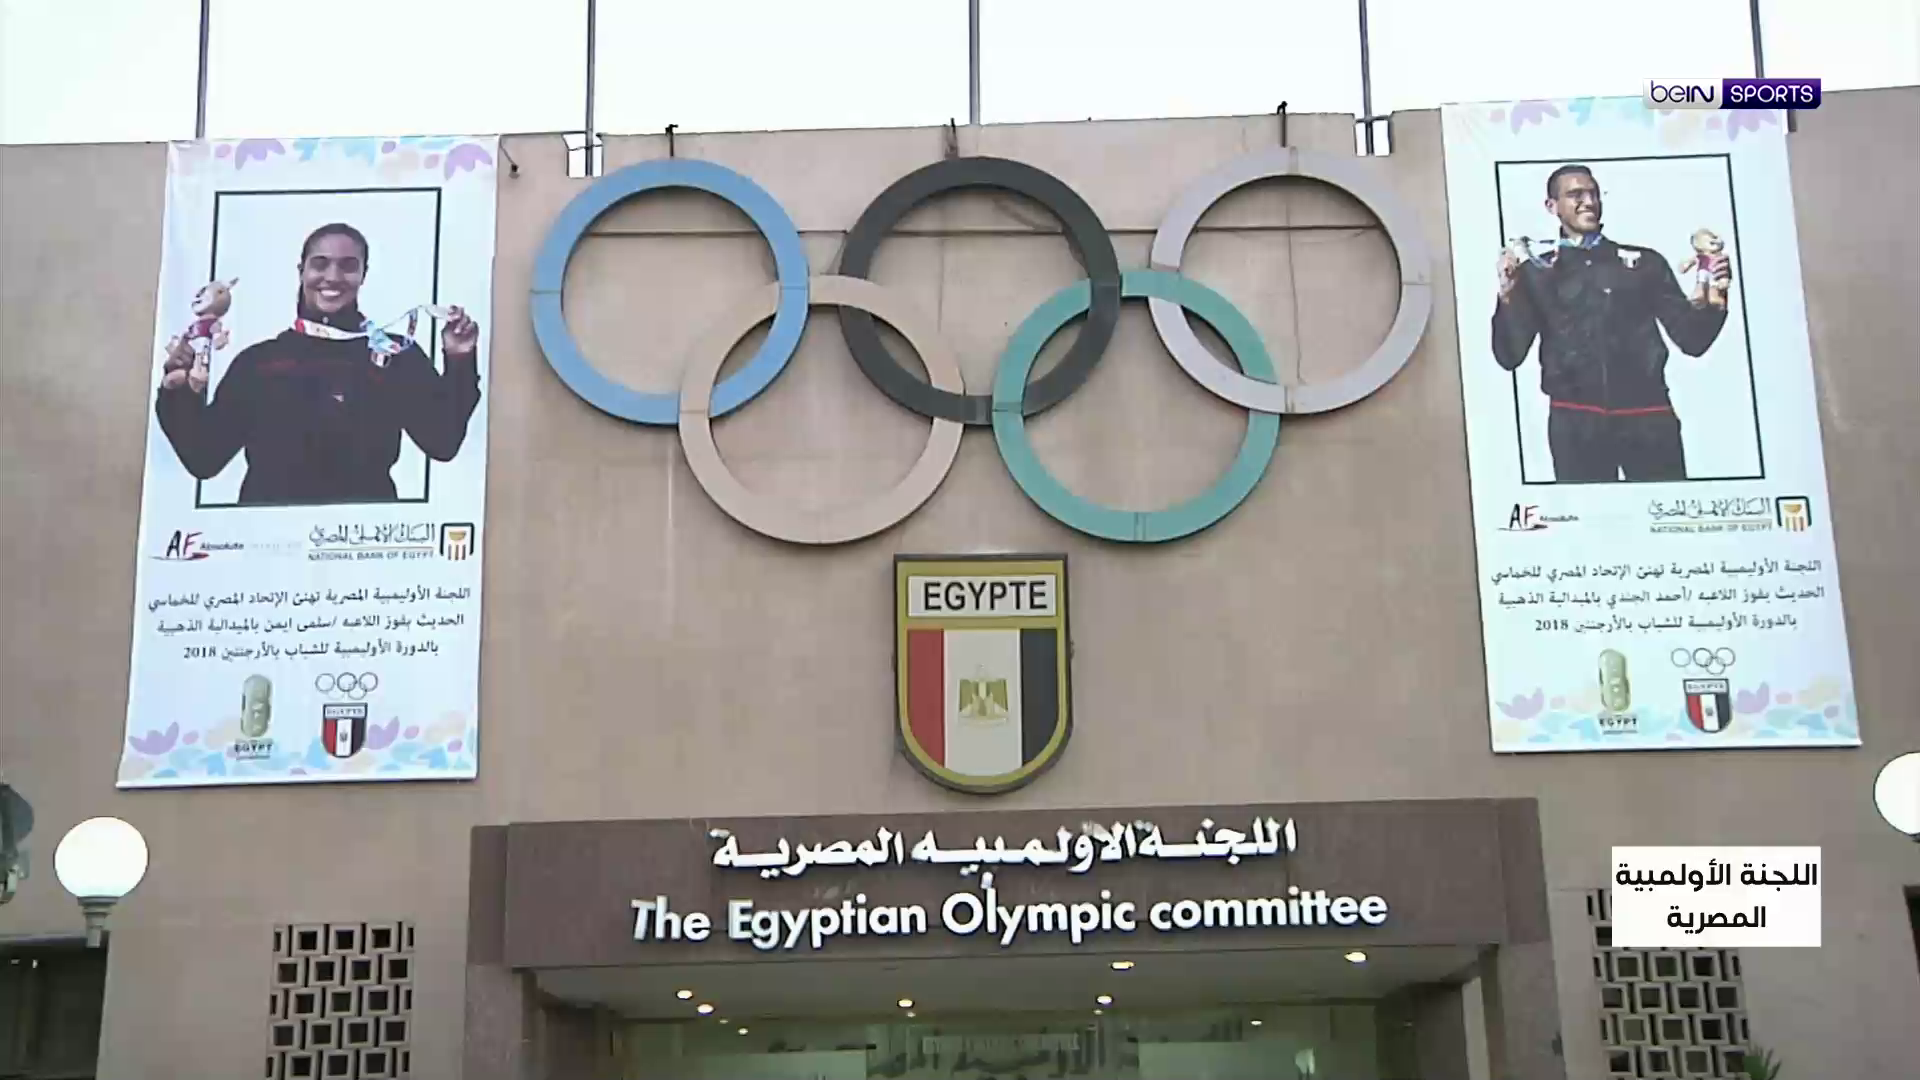 إيقاف رئيس اللجنة الأولمبية المصرية بأثر فوري